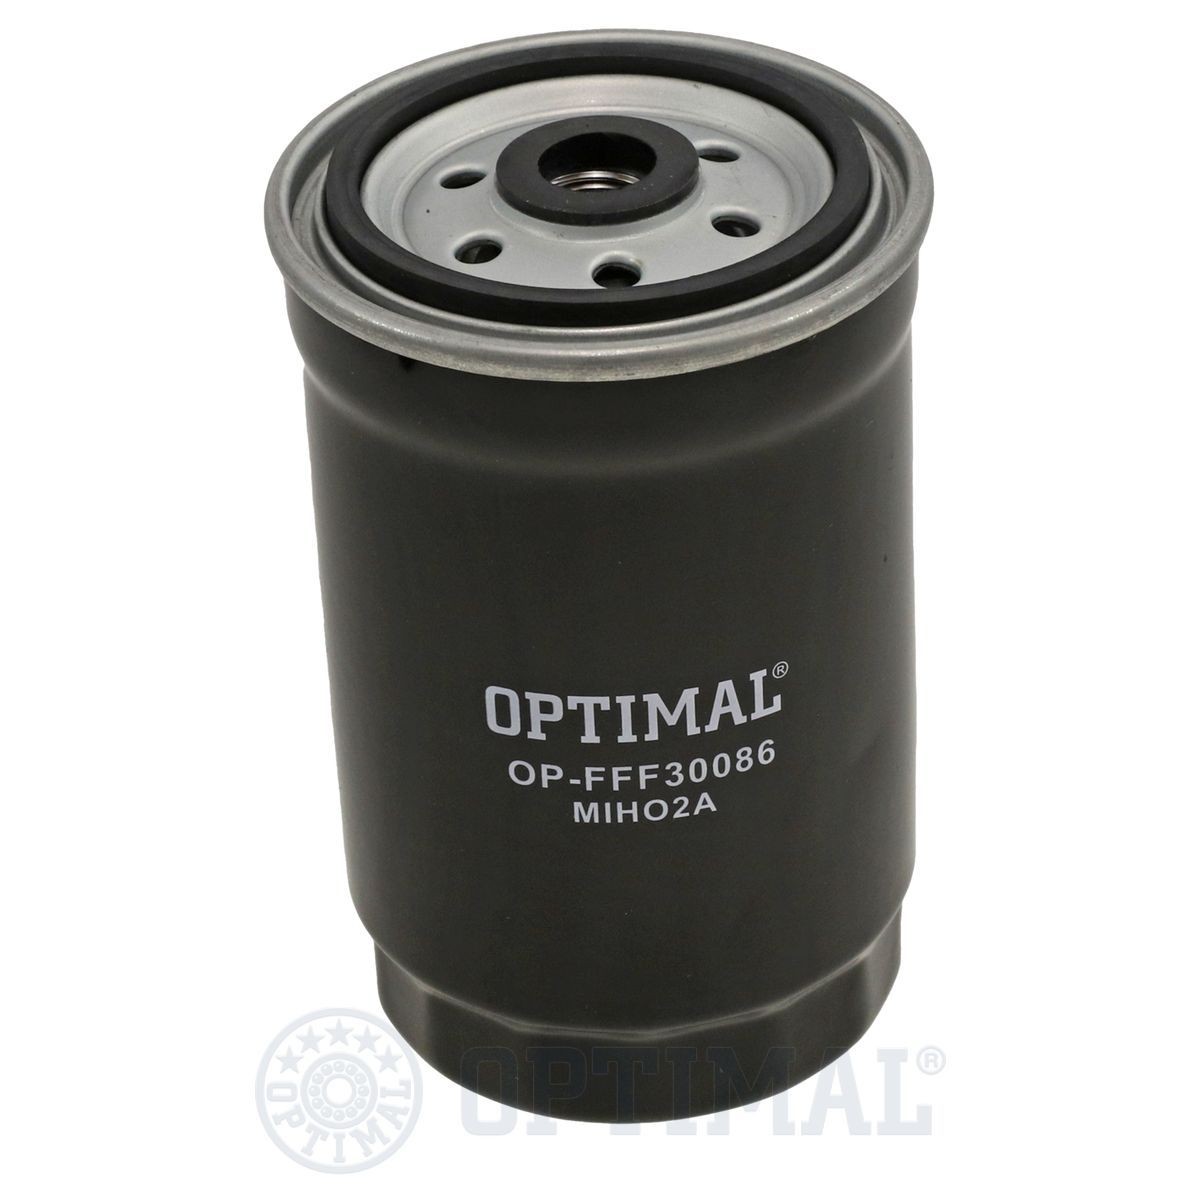 OPTIMAL OP-FFF30086 Fuel filter S3192 22B900